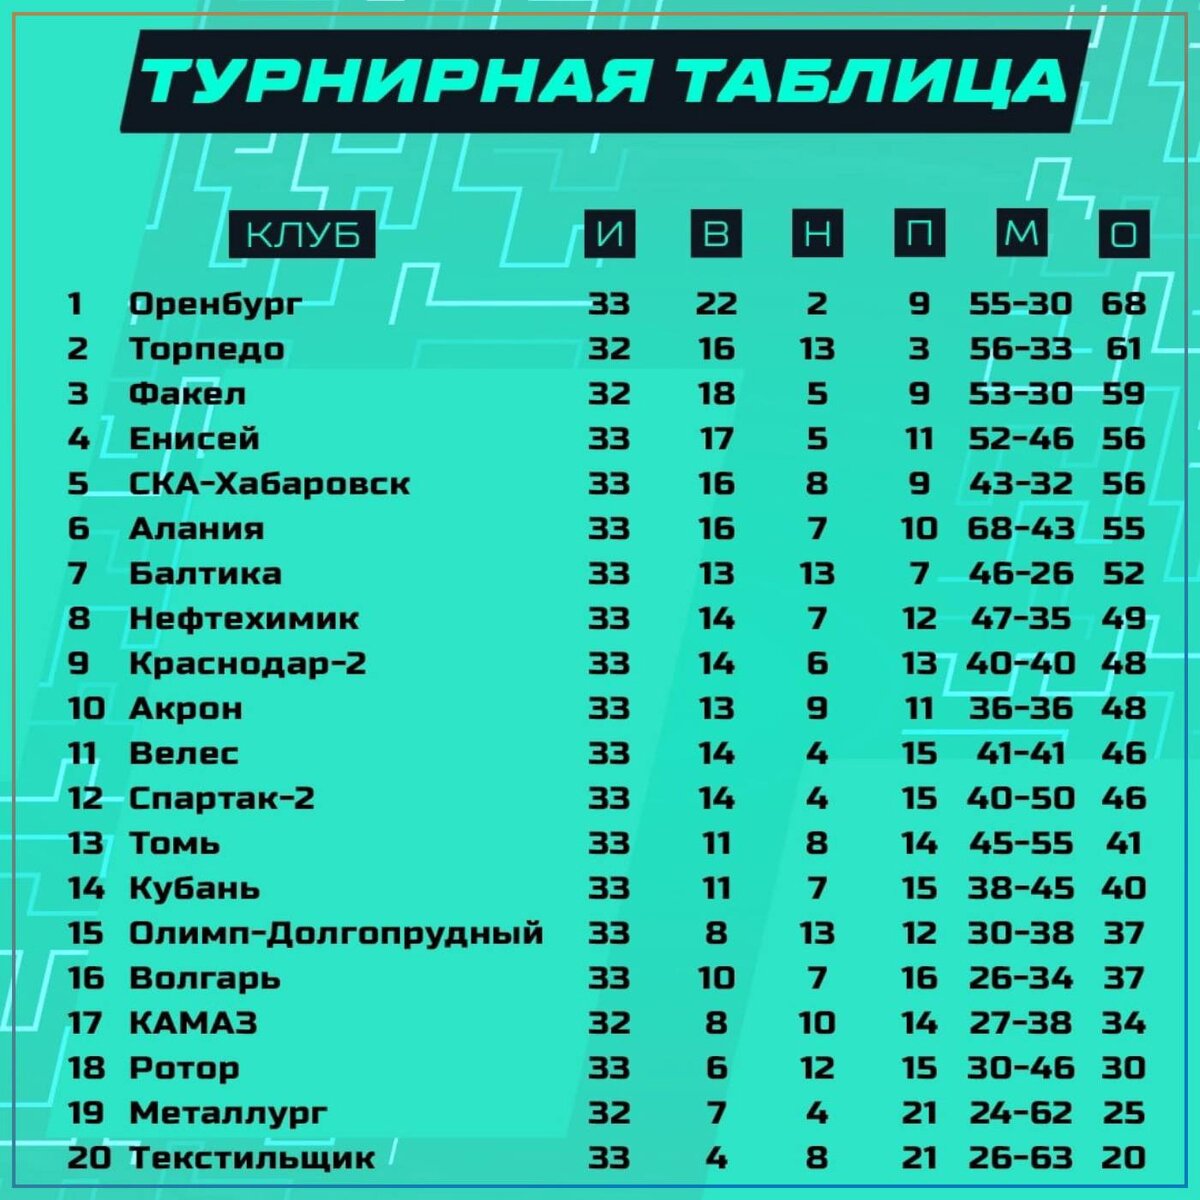 Чемпионат россии первый дивизион таблица. ФНЛ 3 таблица. Таблица лучшей Лиги в мире. Таблица ФНЛ В 19 году. Японская флтаблица.